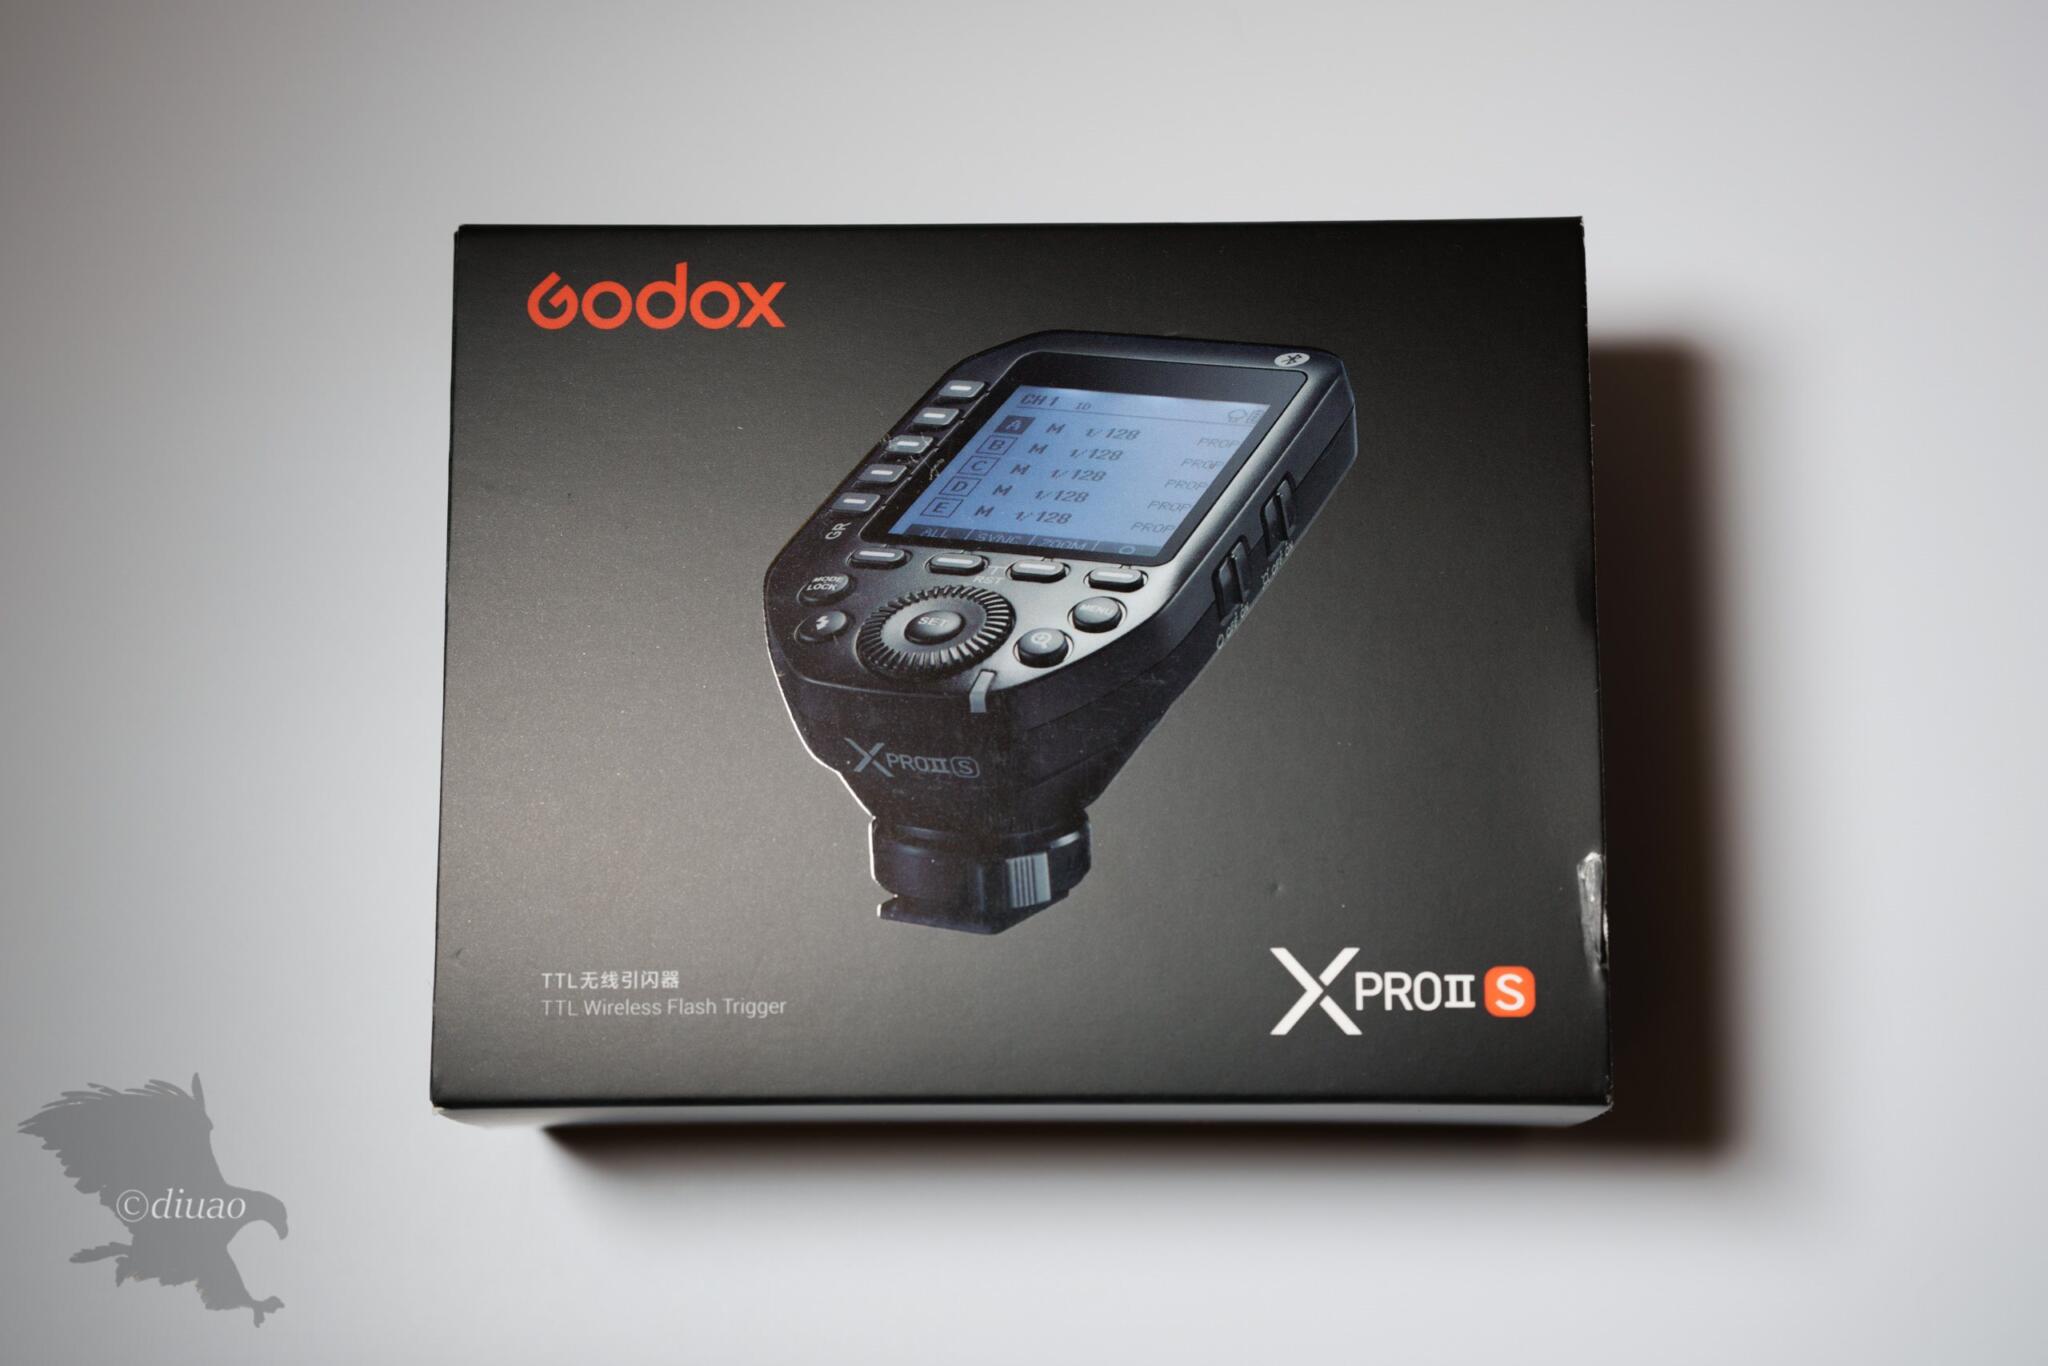 XPROII-S 】Godoxの最新トリガーがアマゾンでひっそりと売られていた